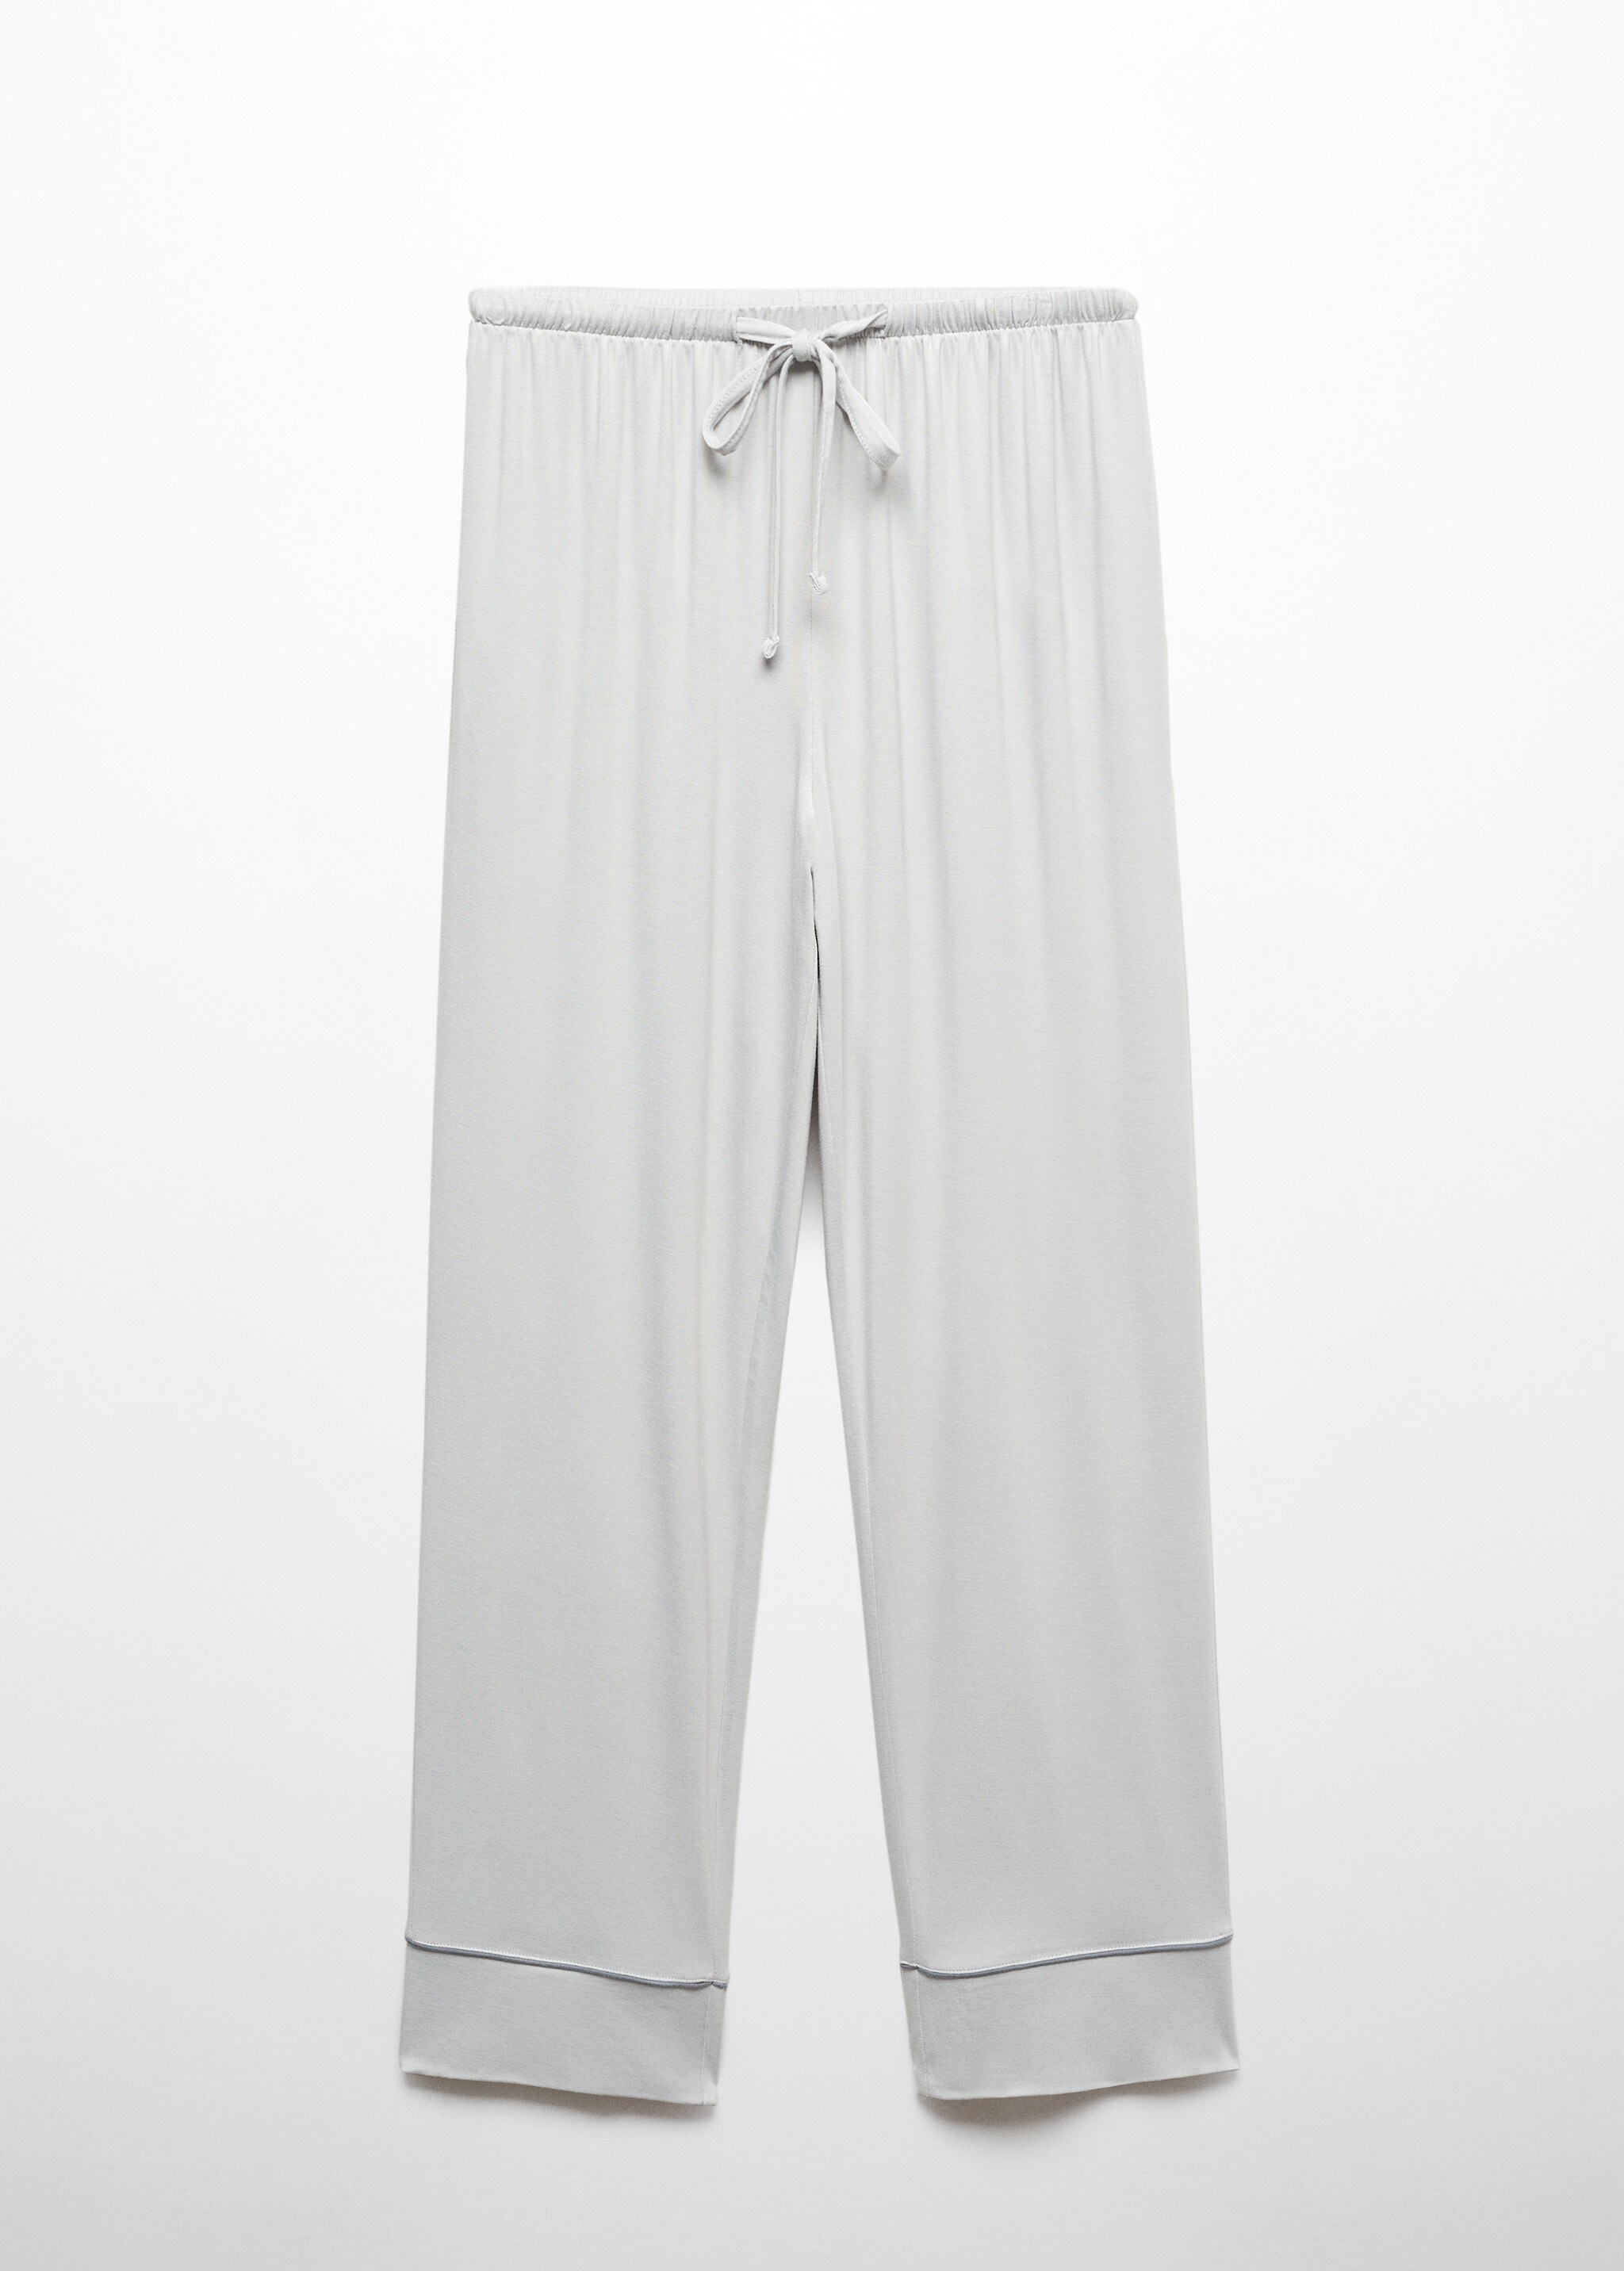 Pantalón pijama ribete  - Artículo sin modelo